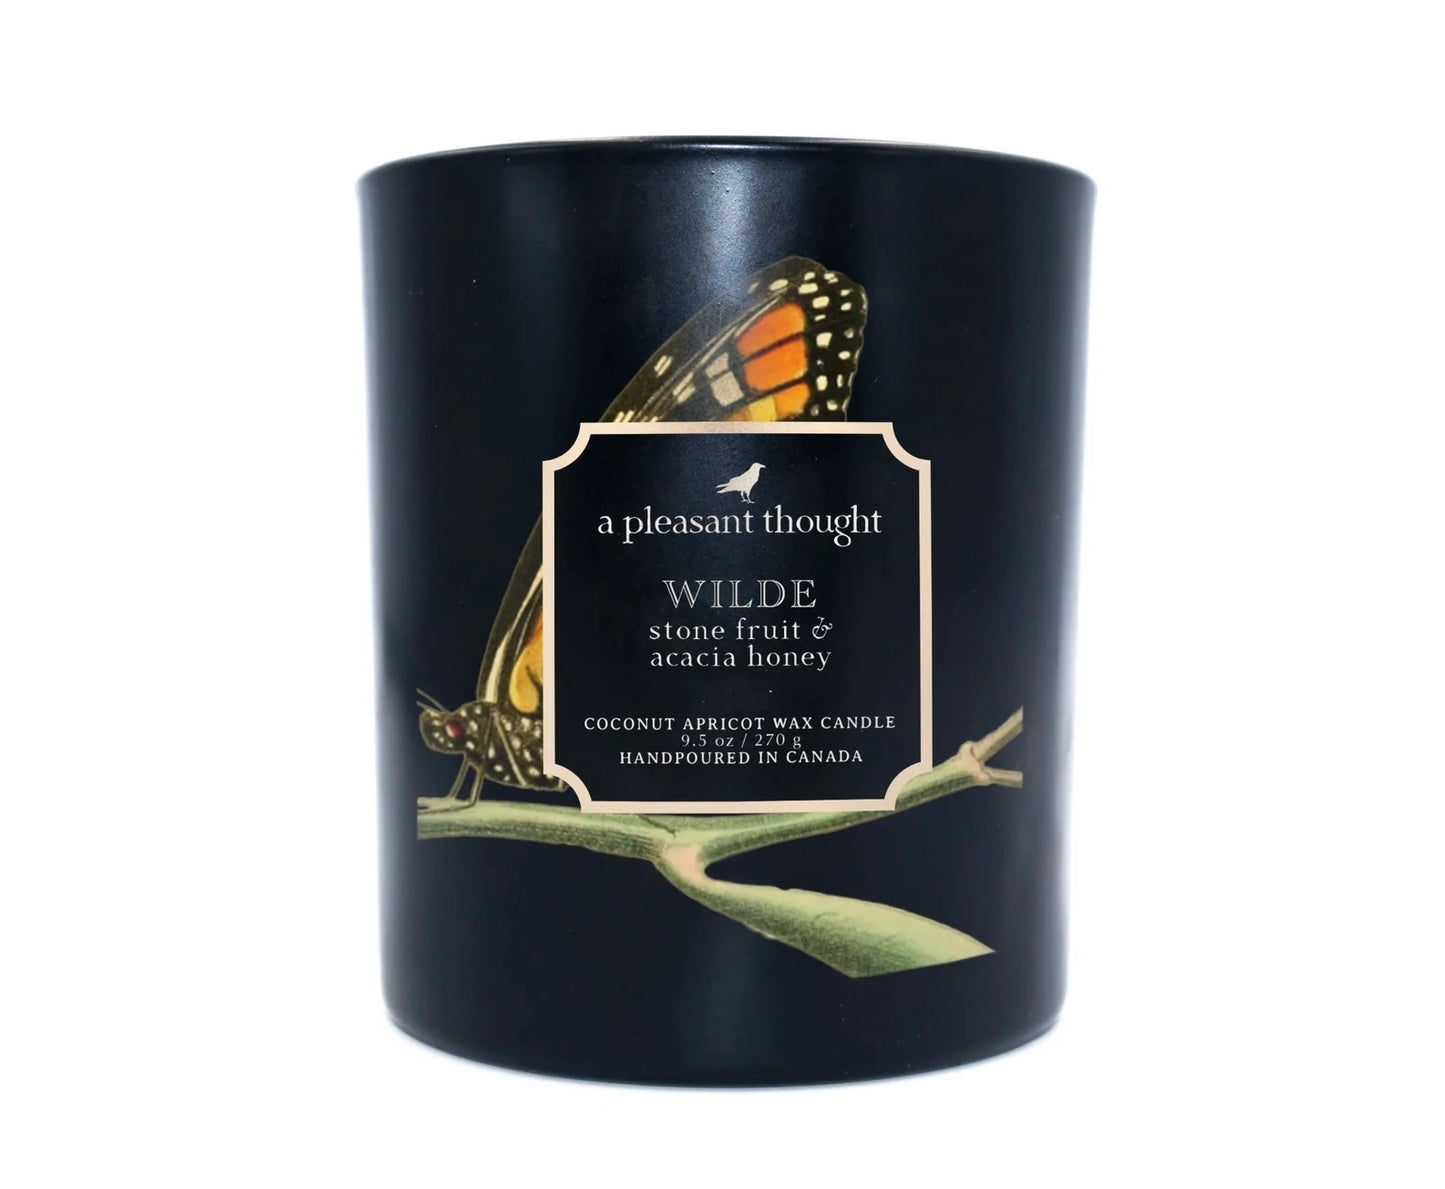 Wilde Stone Fruit & Acacia Honey Candle